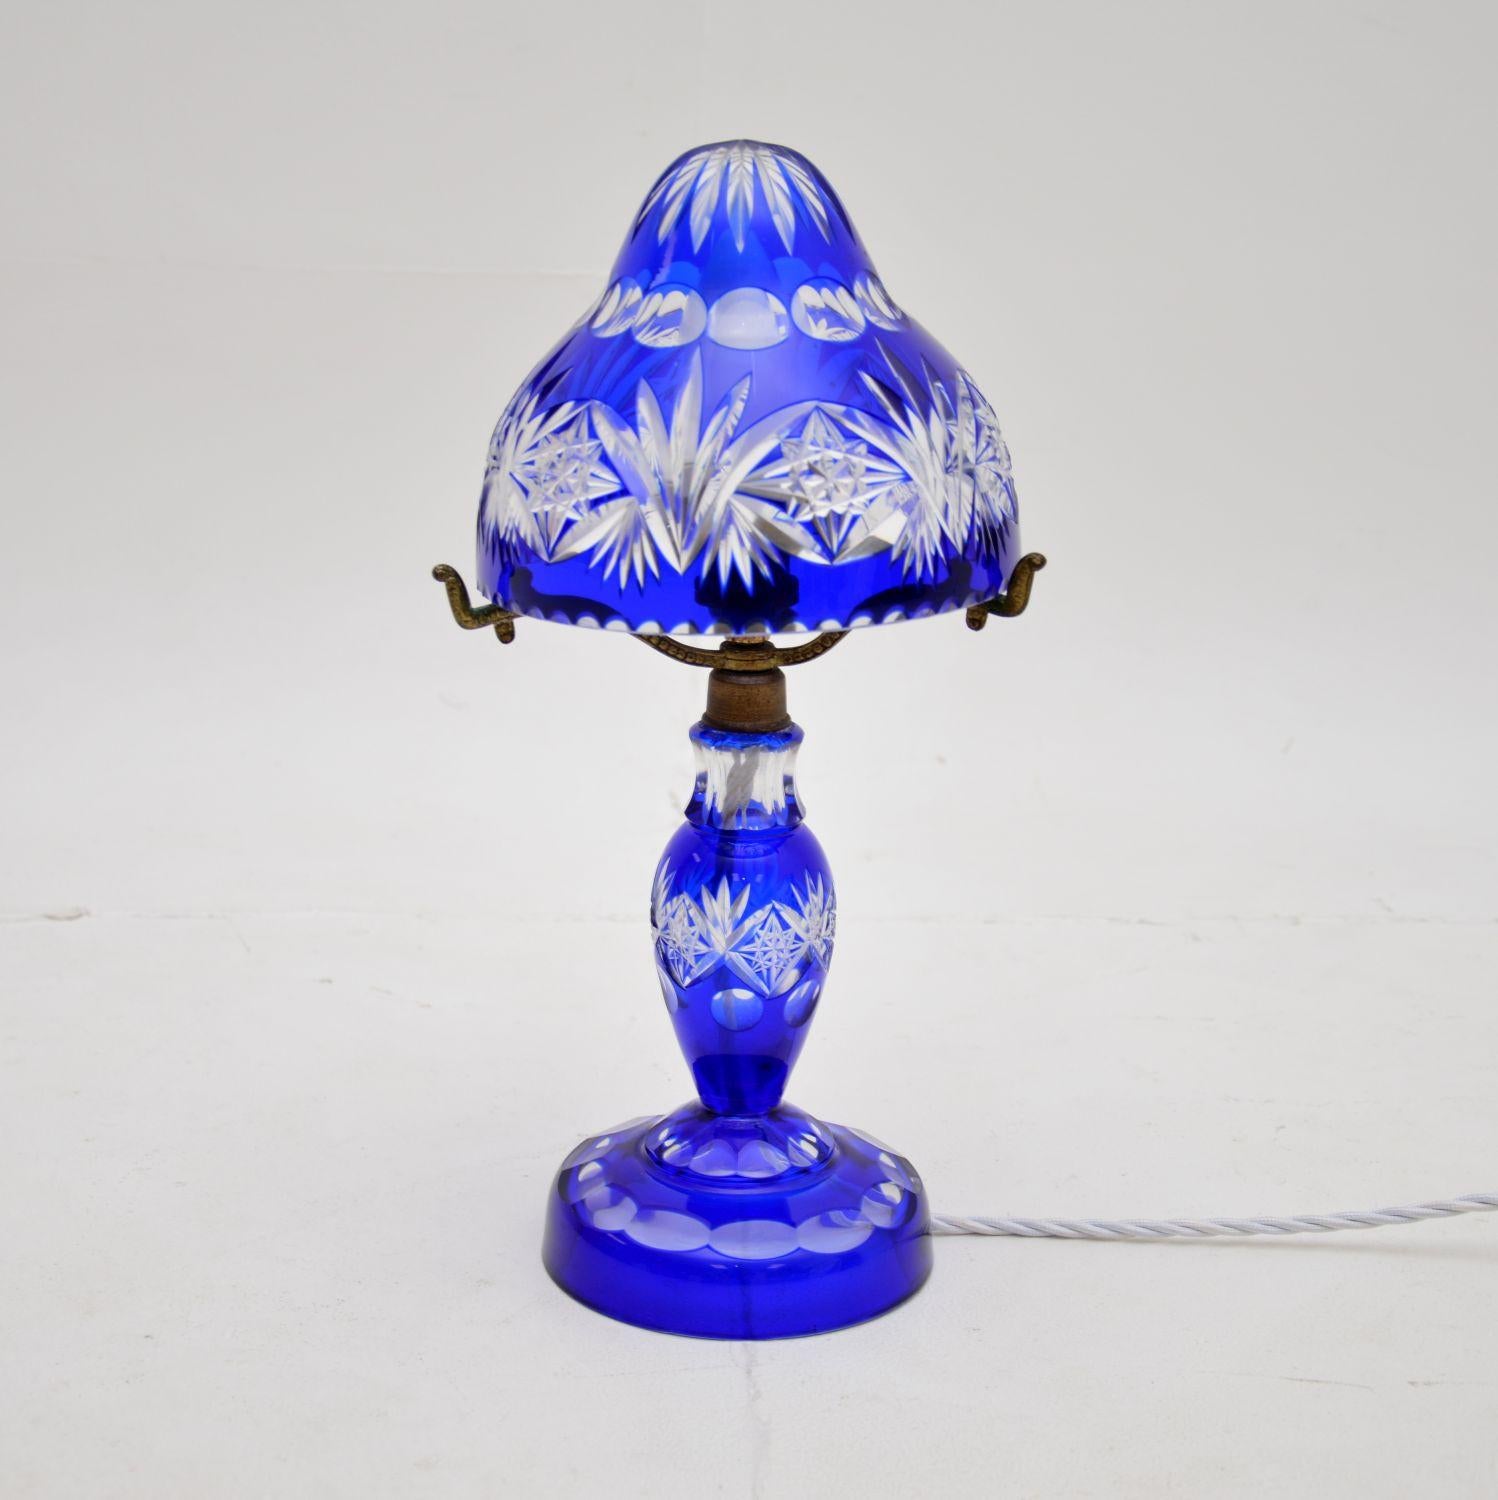 Eine schöne antike böhmische Kristallglas-Tischlampe, Vase und Schale. Sie wurden im tschechischen Bohemia hergestellt und stammen etwa aus den Jahren 1910-20.

Die Qualität ist fantastisch, das clue-Kristallglas hat wunderschöne handgeschliffene